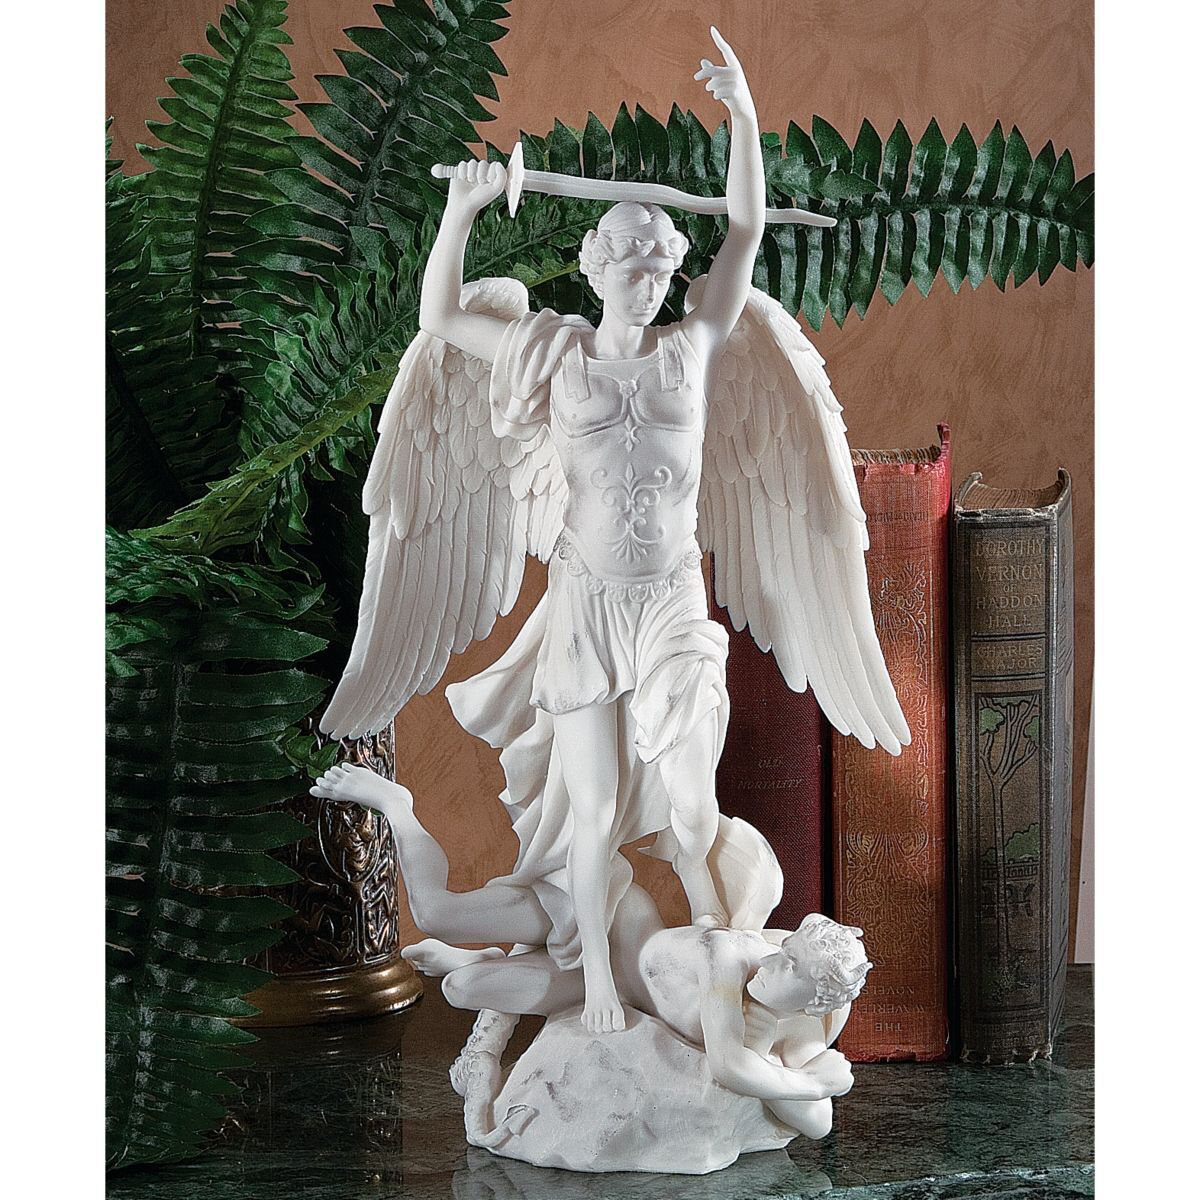 Fontaine Saint Michael Satan's Defeat Bonded Marble Sculpture Gallery Statue